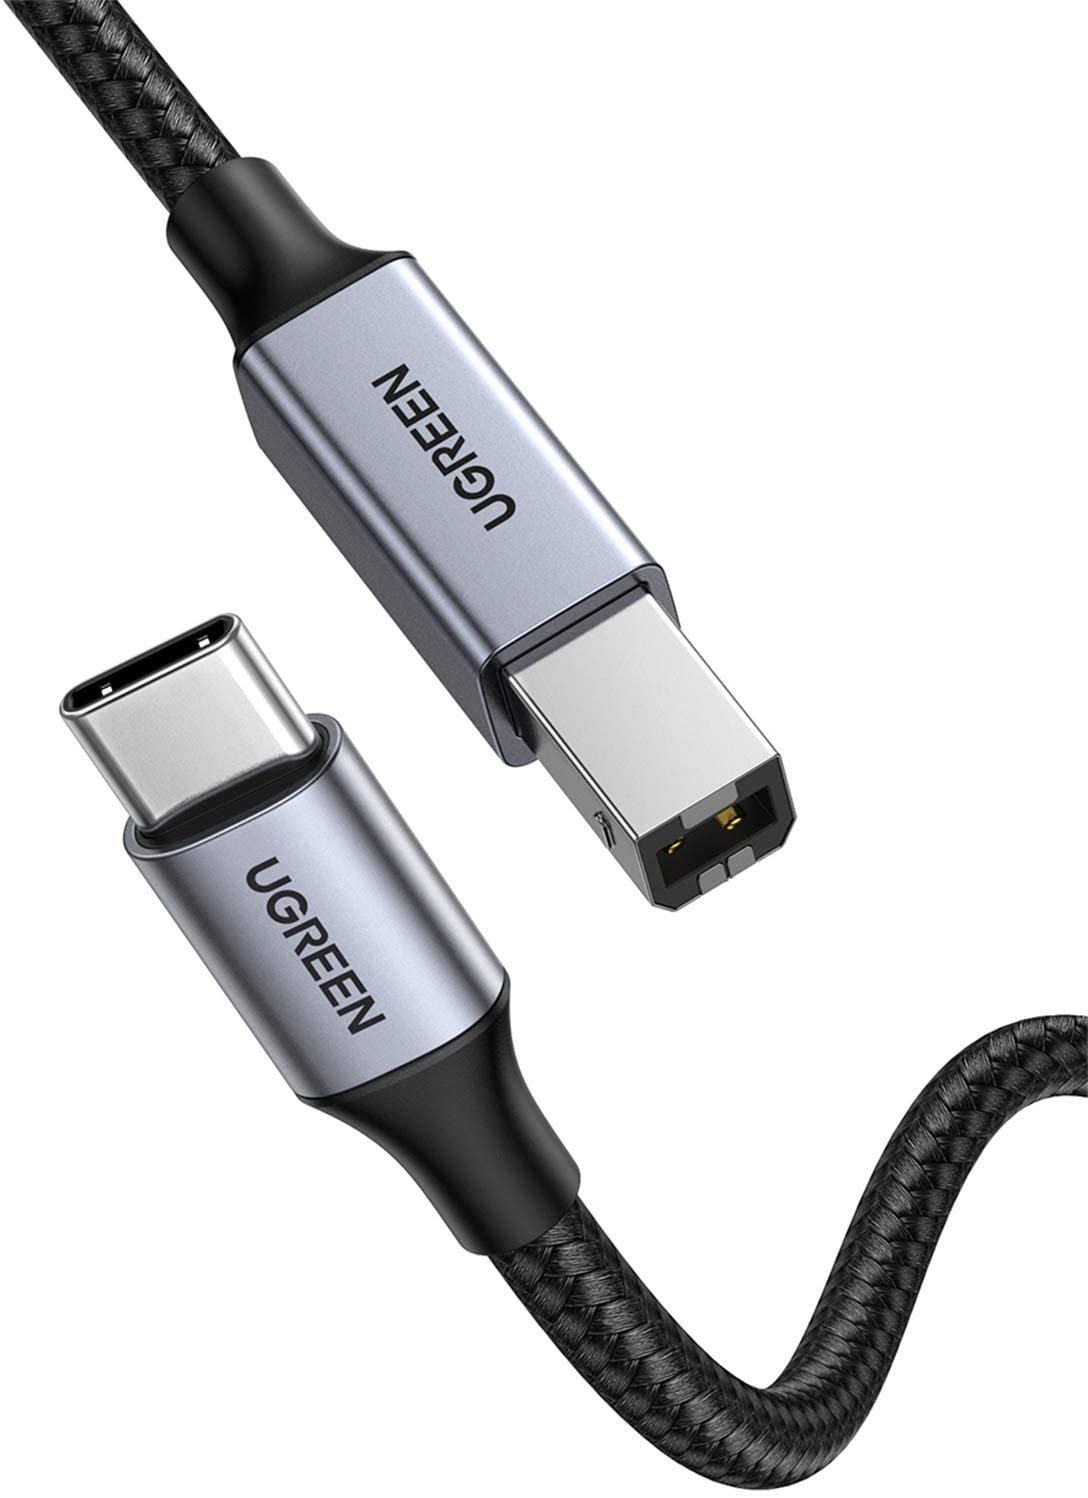 Cáp USB in (máy in) chuyển từ USB Type C sang USB Type B dài 2M bọc dù (US370) Ugreen 80807